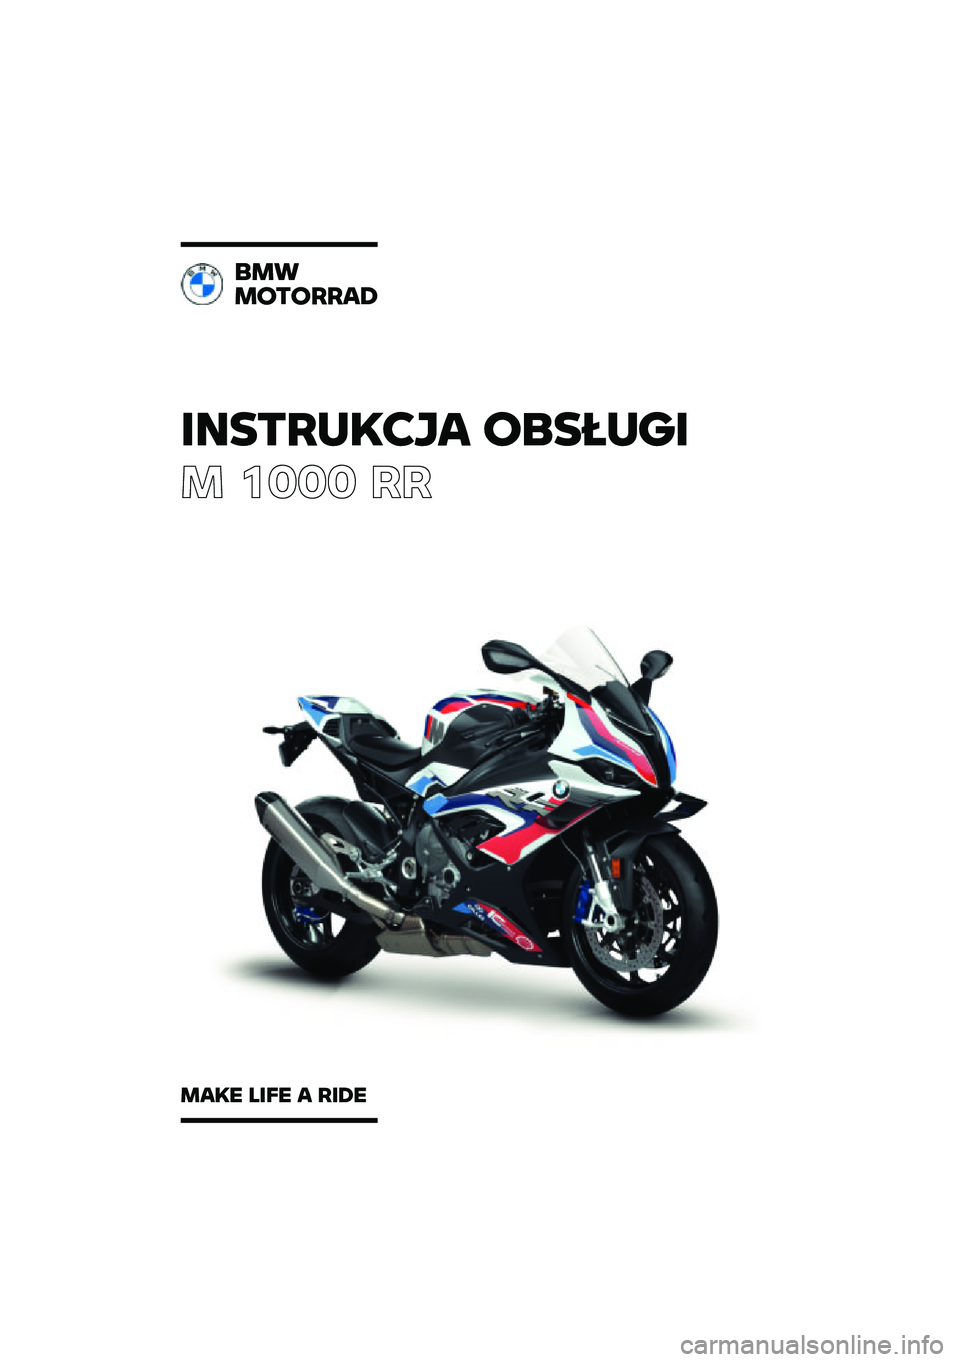 BMW MOTORRAD M 1000 RR 2021  Instrukcja obsługi (in Polish) �������\b�	�
� �\f�
�����
� ���� ��
�
��
��\f��\f����
���\b� ���� � ���� 